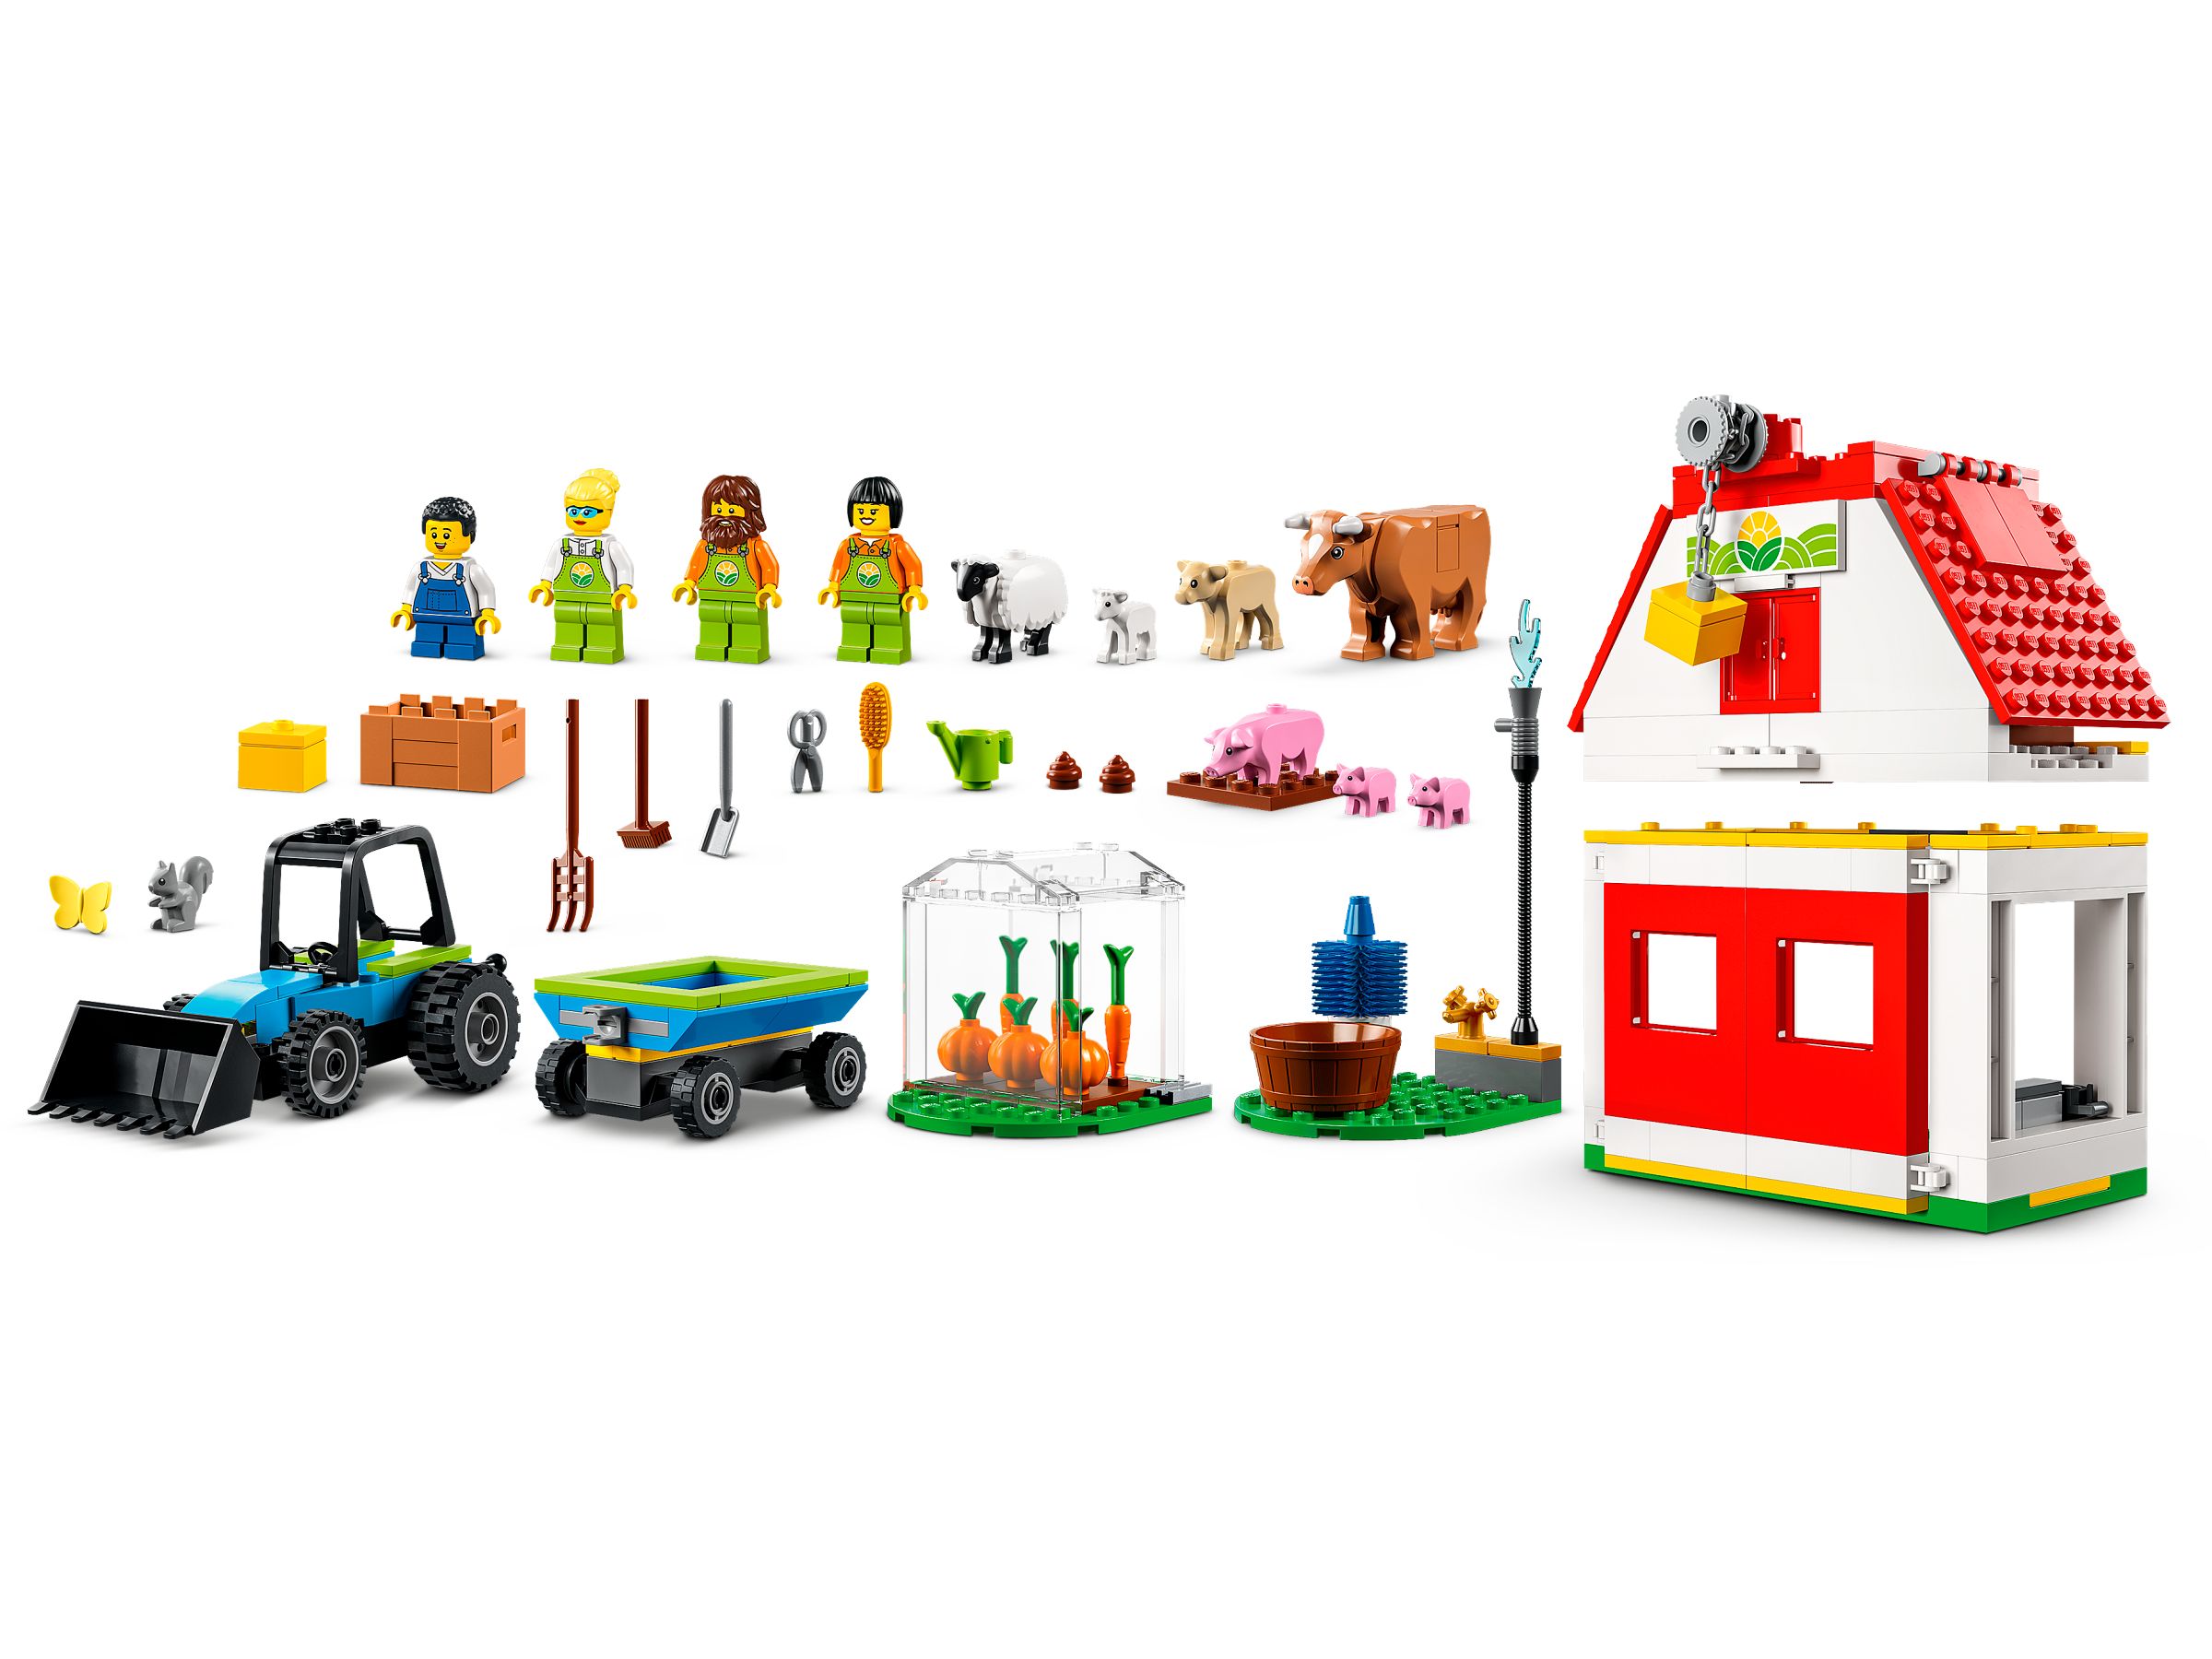 LEGO City 60346 Bauernhof mit Tieren LEGO_60346_alt2.jpg